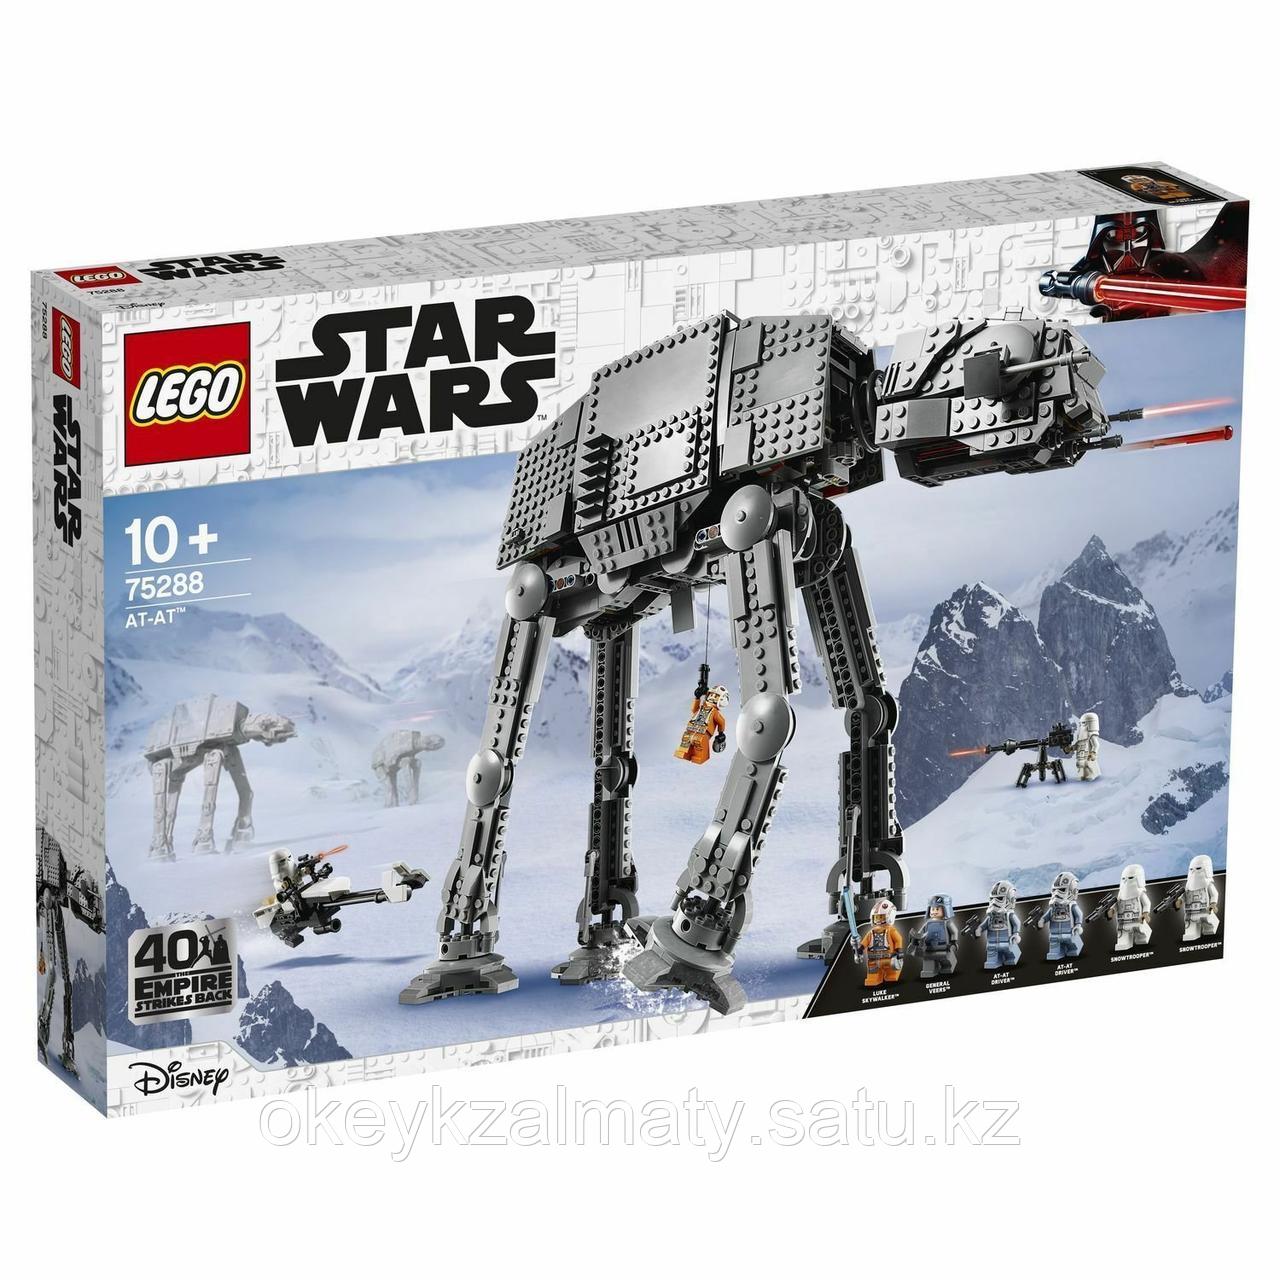 LEGO Star Wars: AT-AT 75288